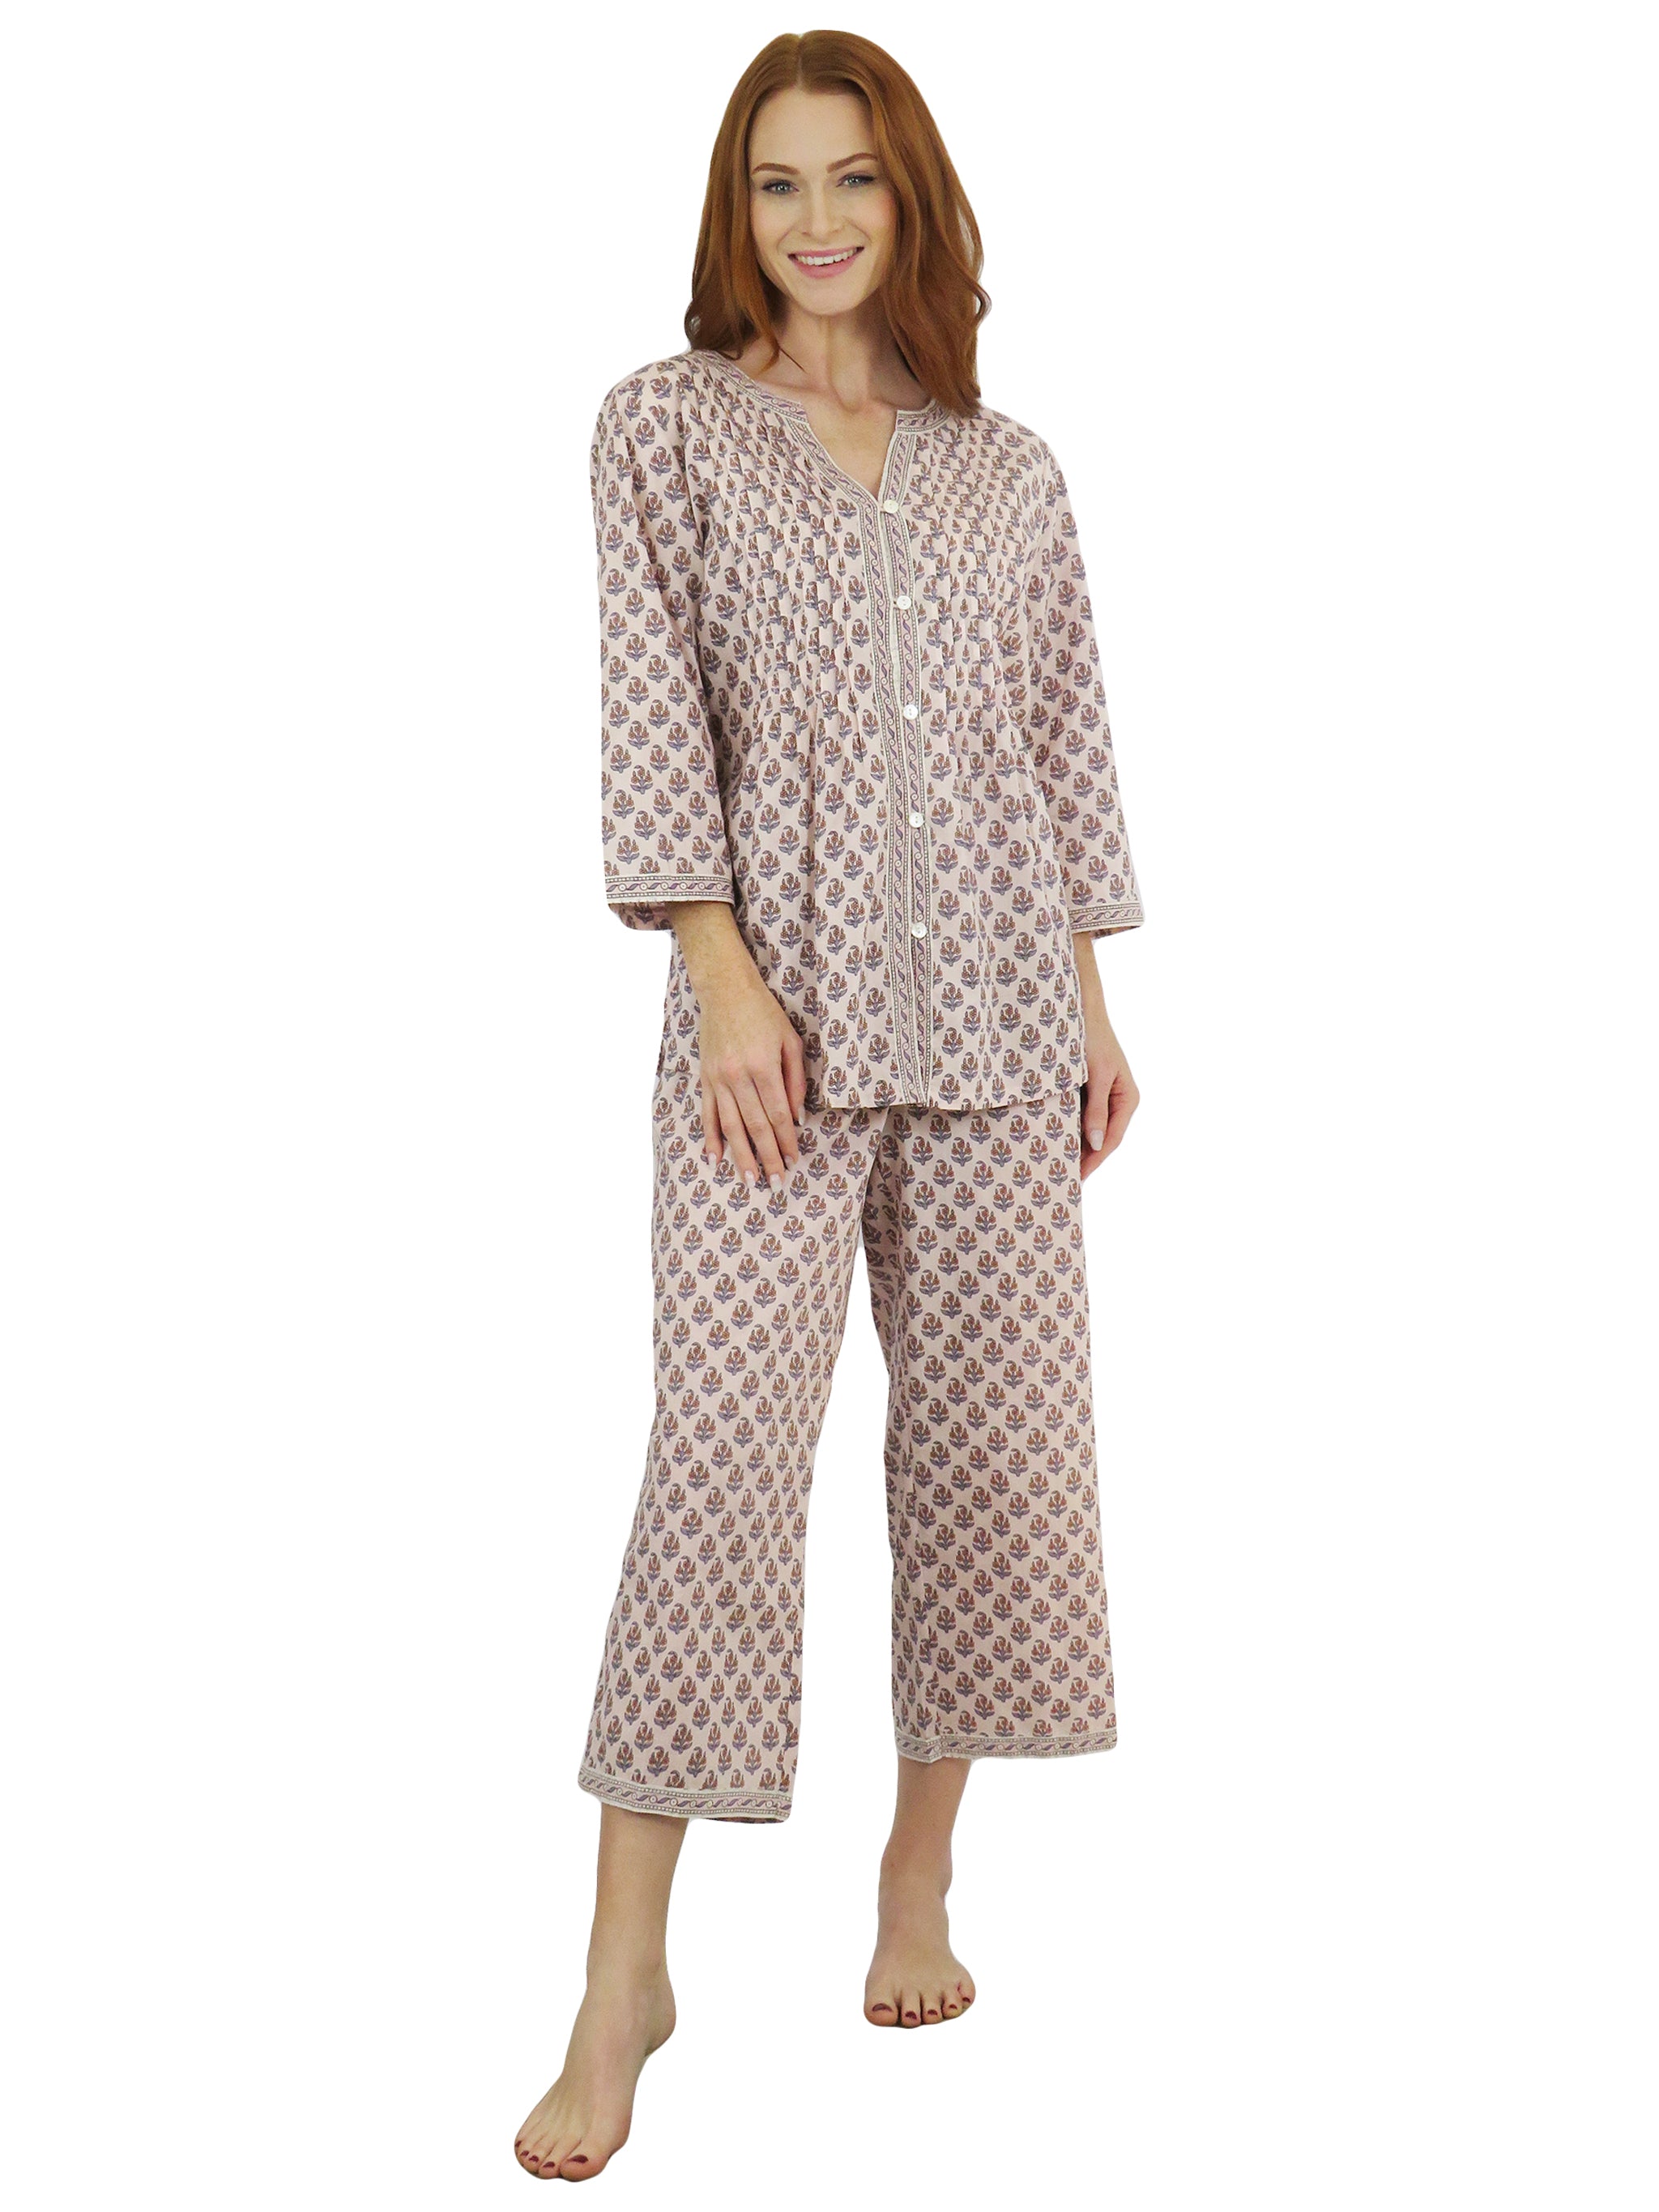 Elegant Cotton Capri Pajama Set Féraud Paris